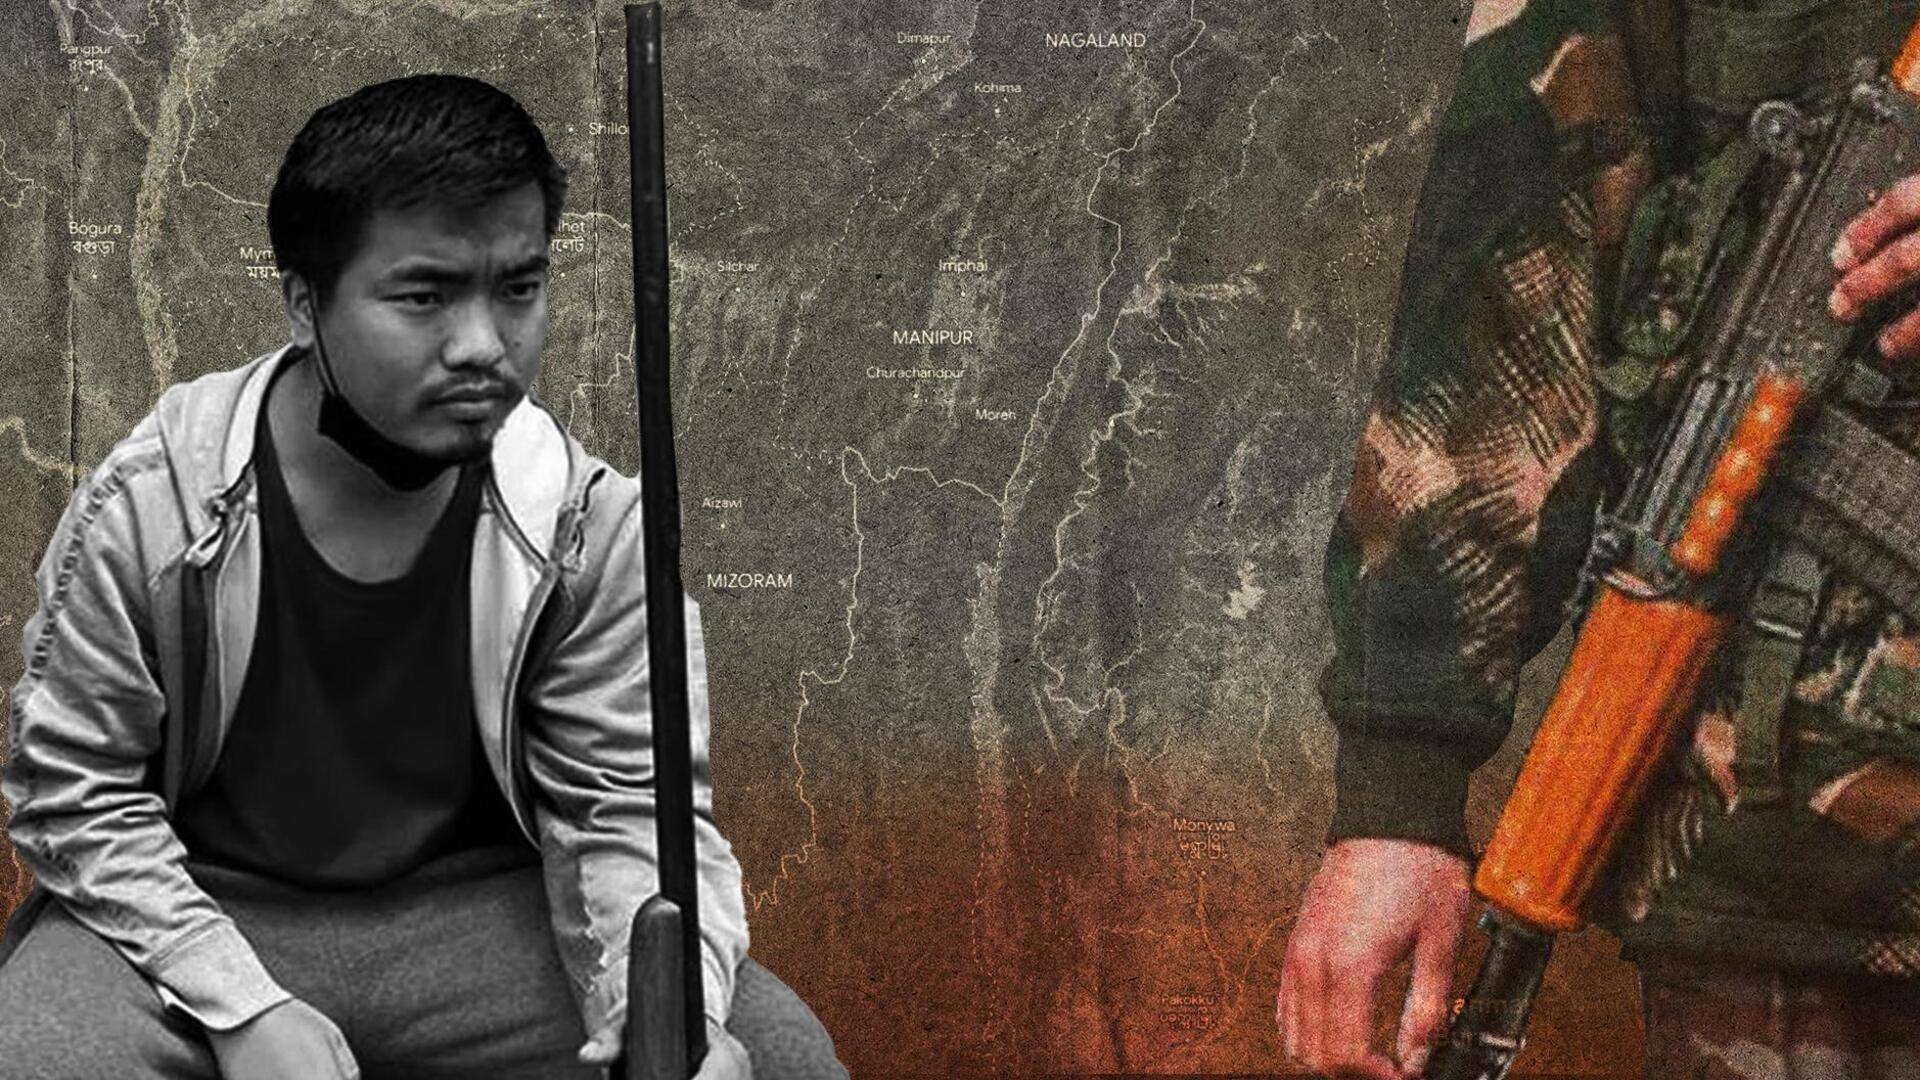 मणिपुर में हिंसा फैलाने के लिए म्यांमार से हुई थी हथियारों की तस्करी- रिपोर्ट